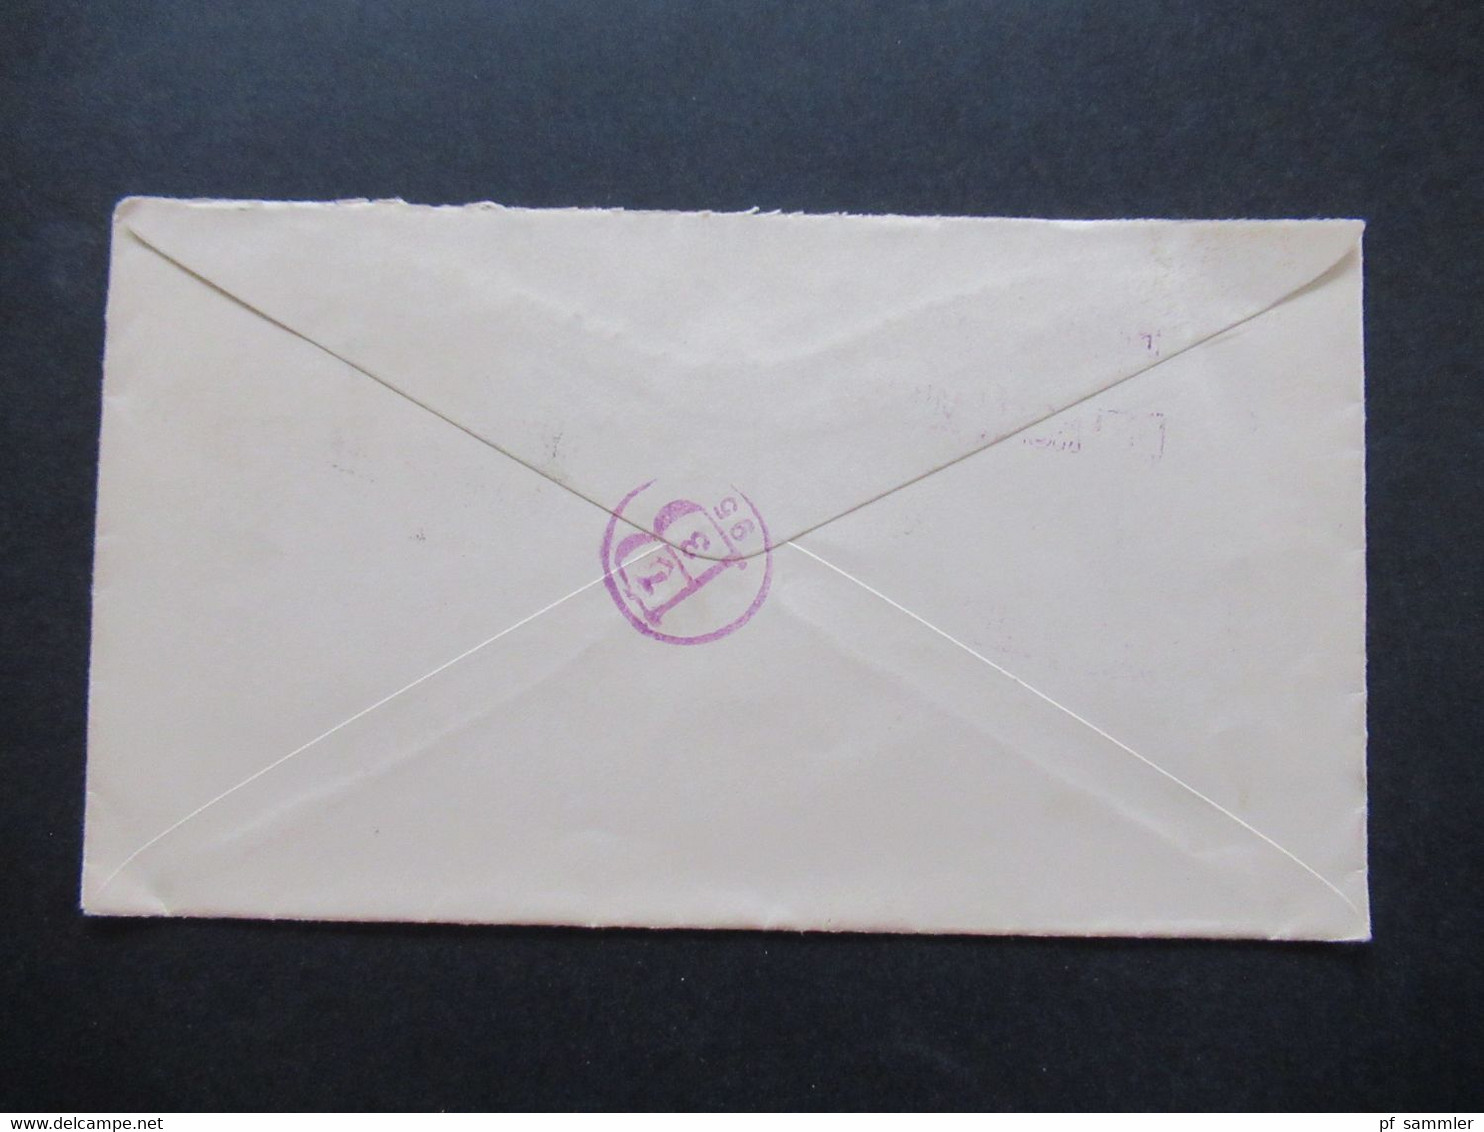 USA 1895 Michel Nr. 62 Und 67 MiF Einschreiben Registered Jul 1 1895 Detroit Mich. Violetter Nummernstempel - Cartas & Documentos